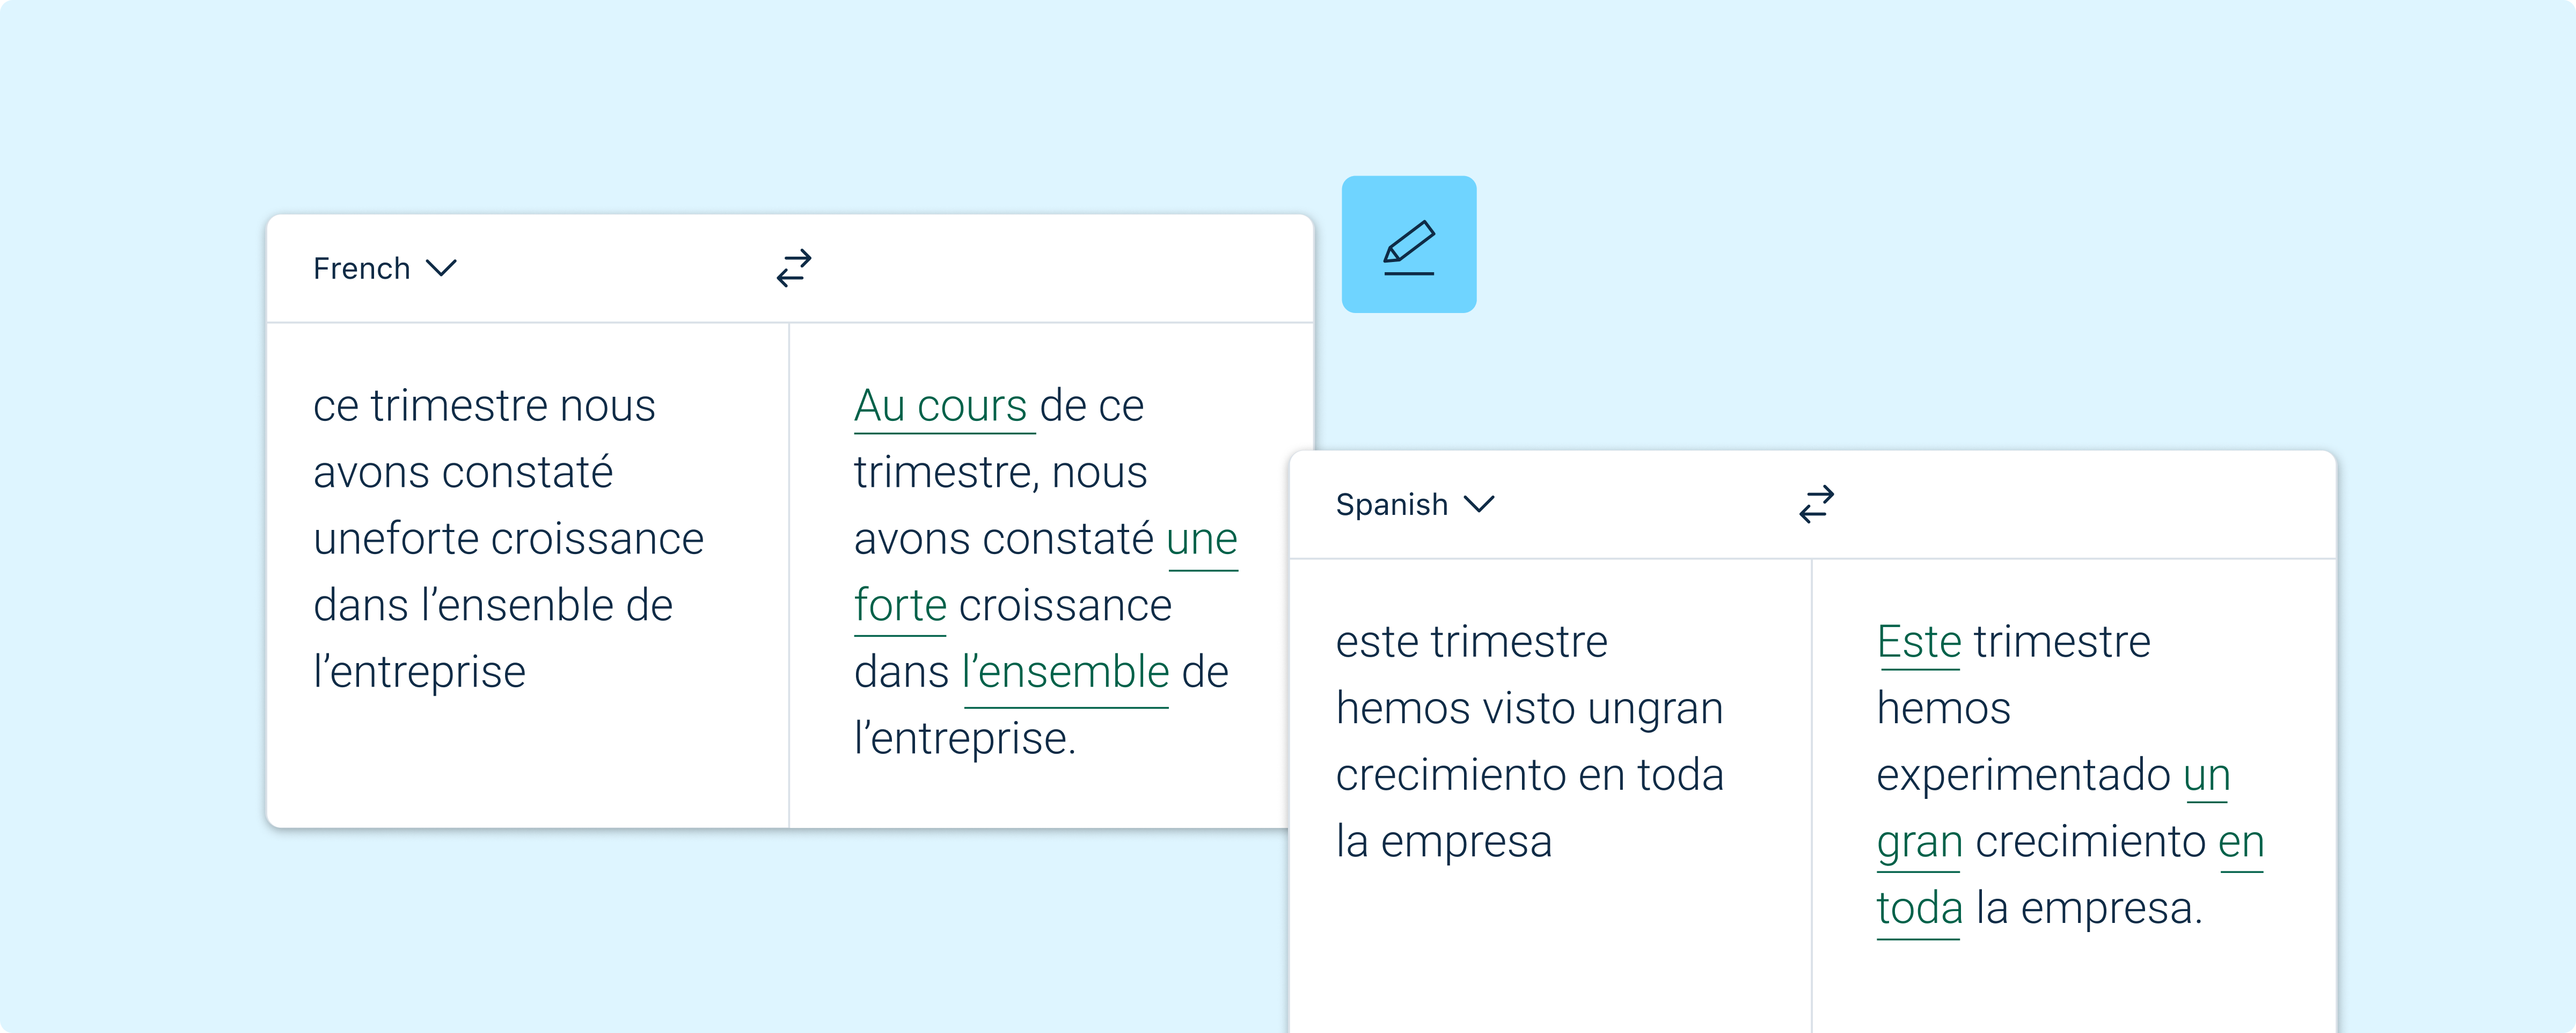 Иллюстрация пользовательского интерфейса Write, показывающая пример исправления орфографических ошибок для создания отличного текста на французском и испанском языках